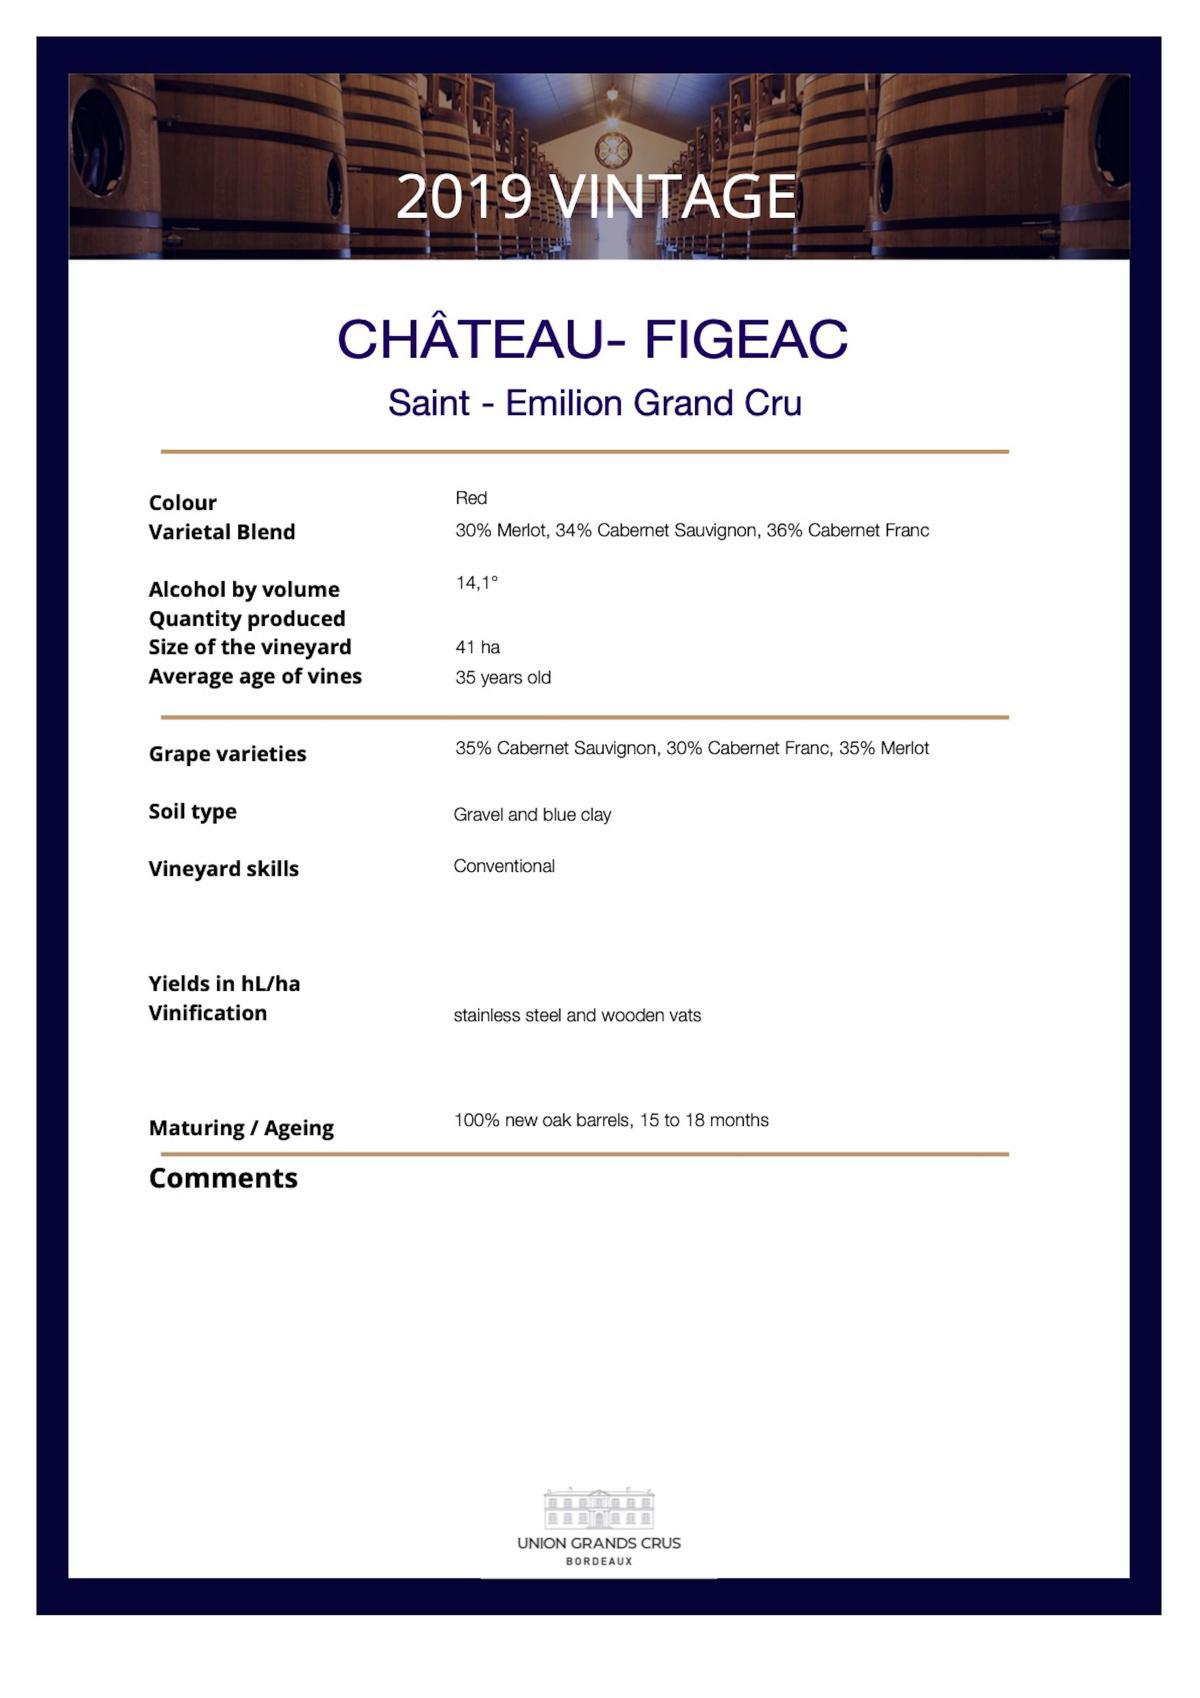 Château-Figeac